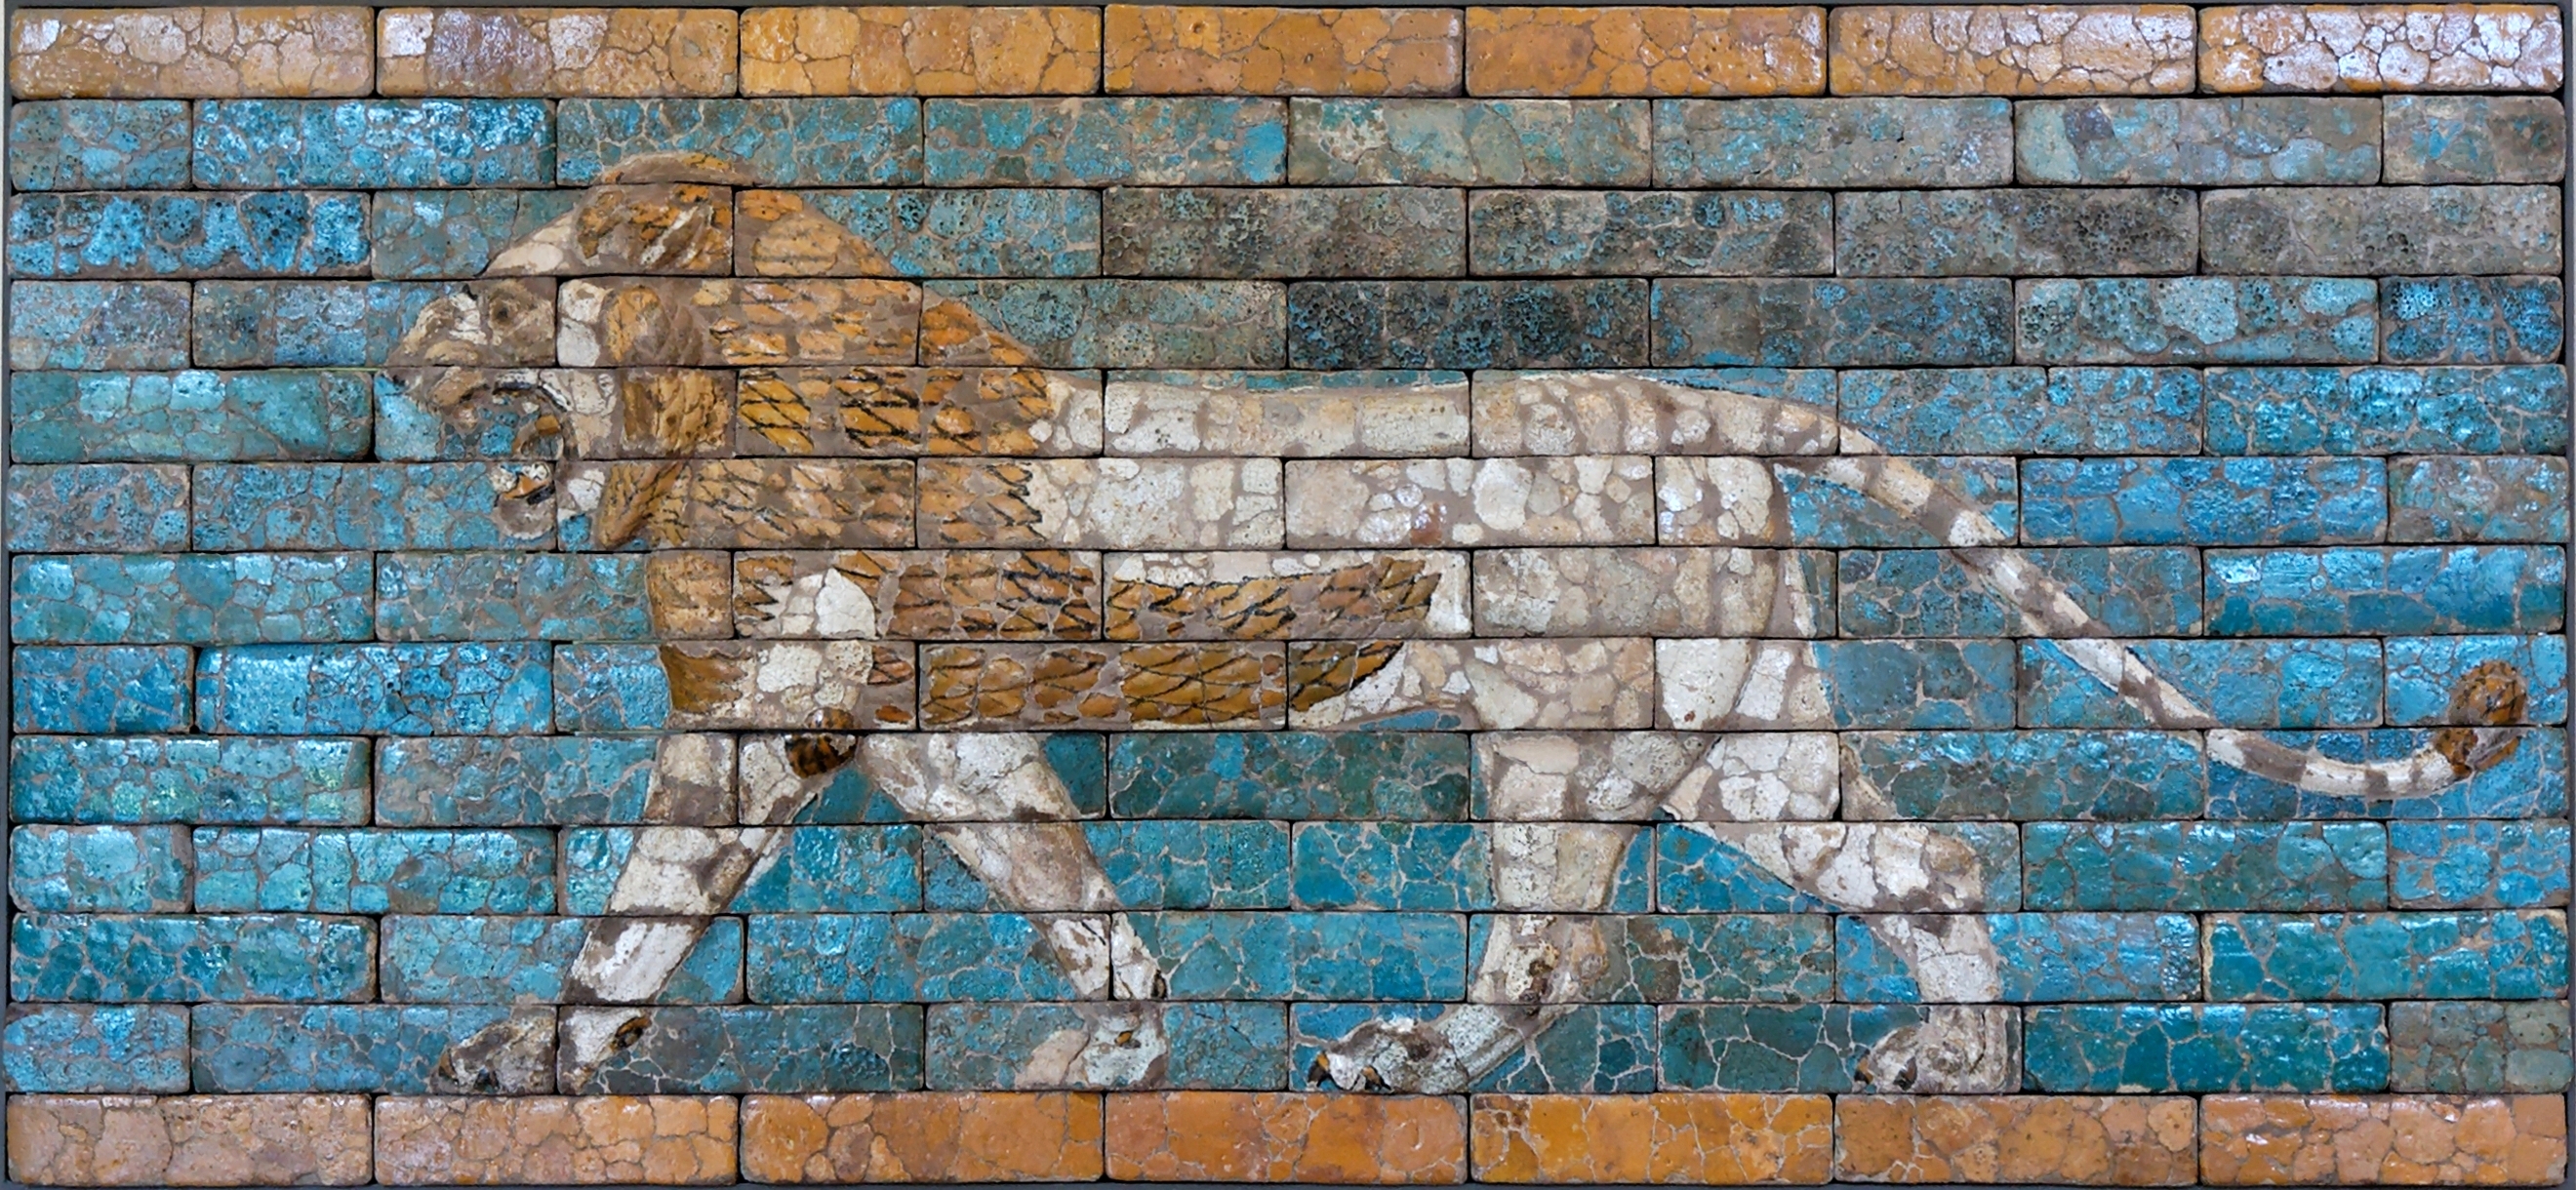 Leão Passante by Artista Desconhecido - 604 A.C. - 562 A.C. - 230 x 107 cm Kunsthistorisches Museum